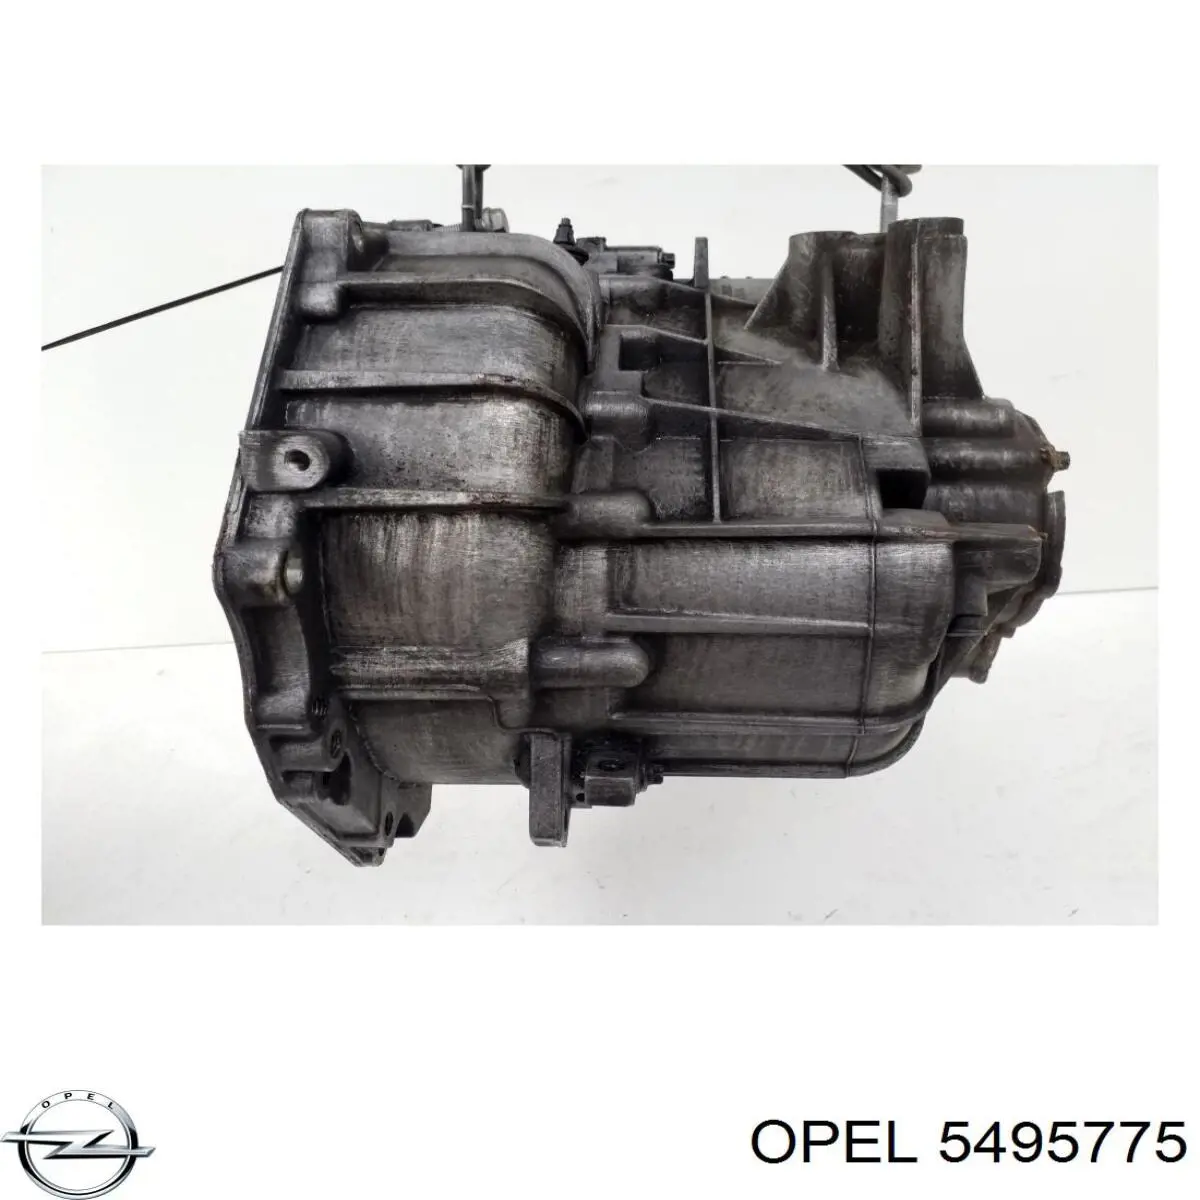 5495775 Opel caja de cambios mecánica, completa